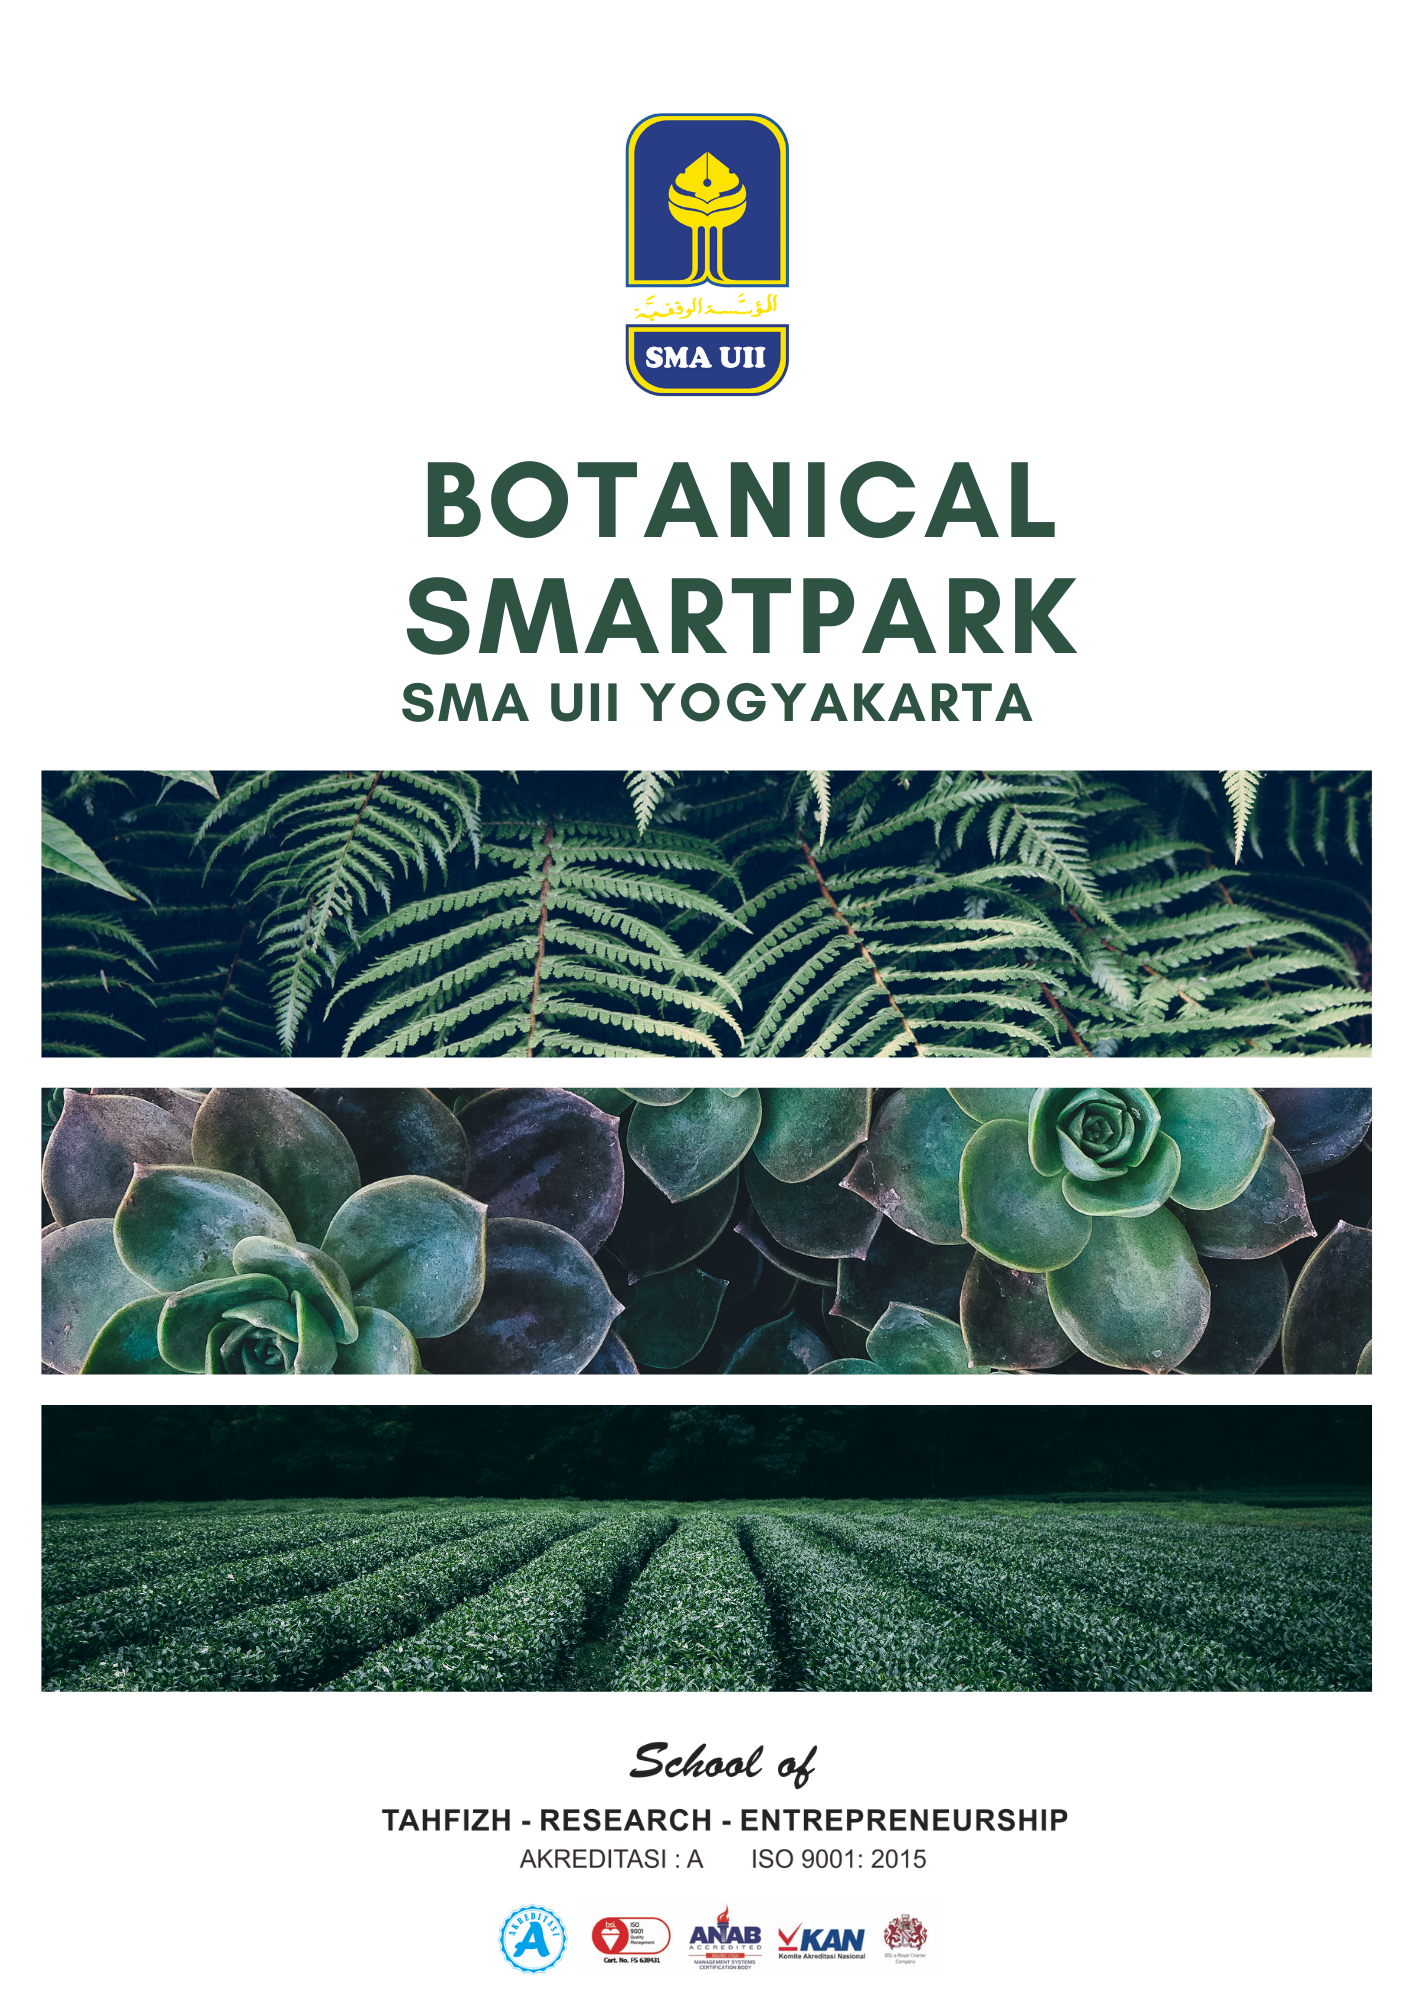 Botanical SmartPark SMA UII